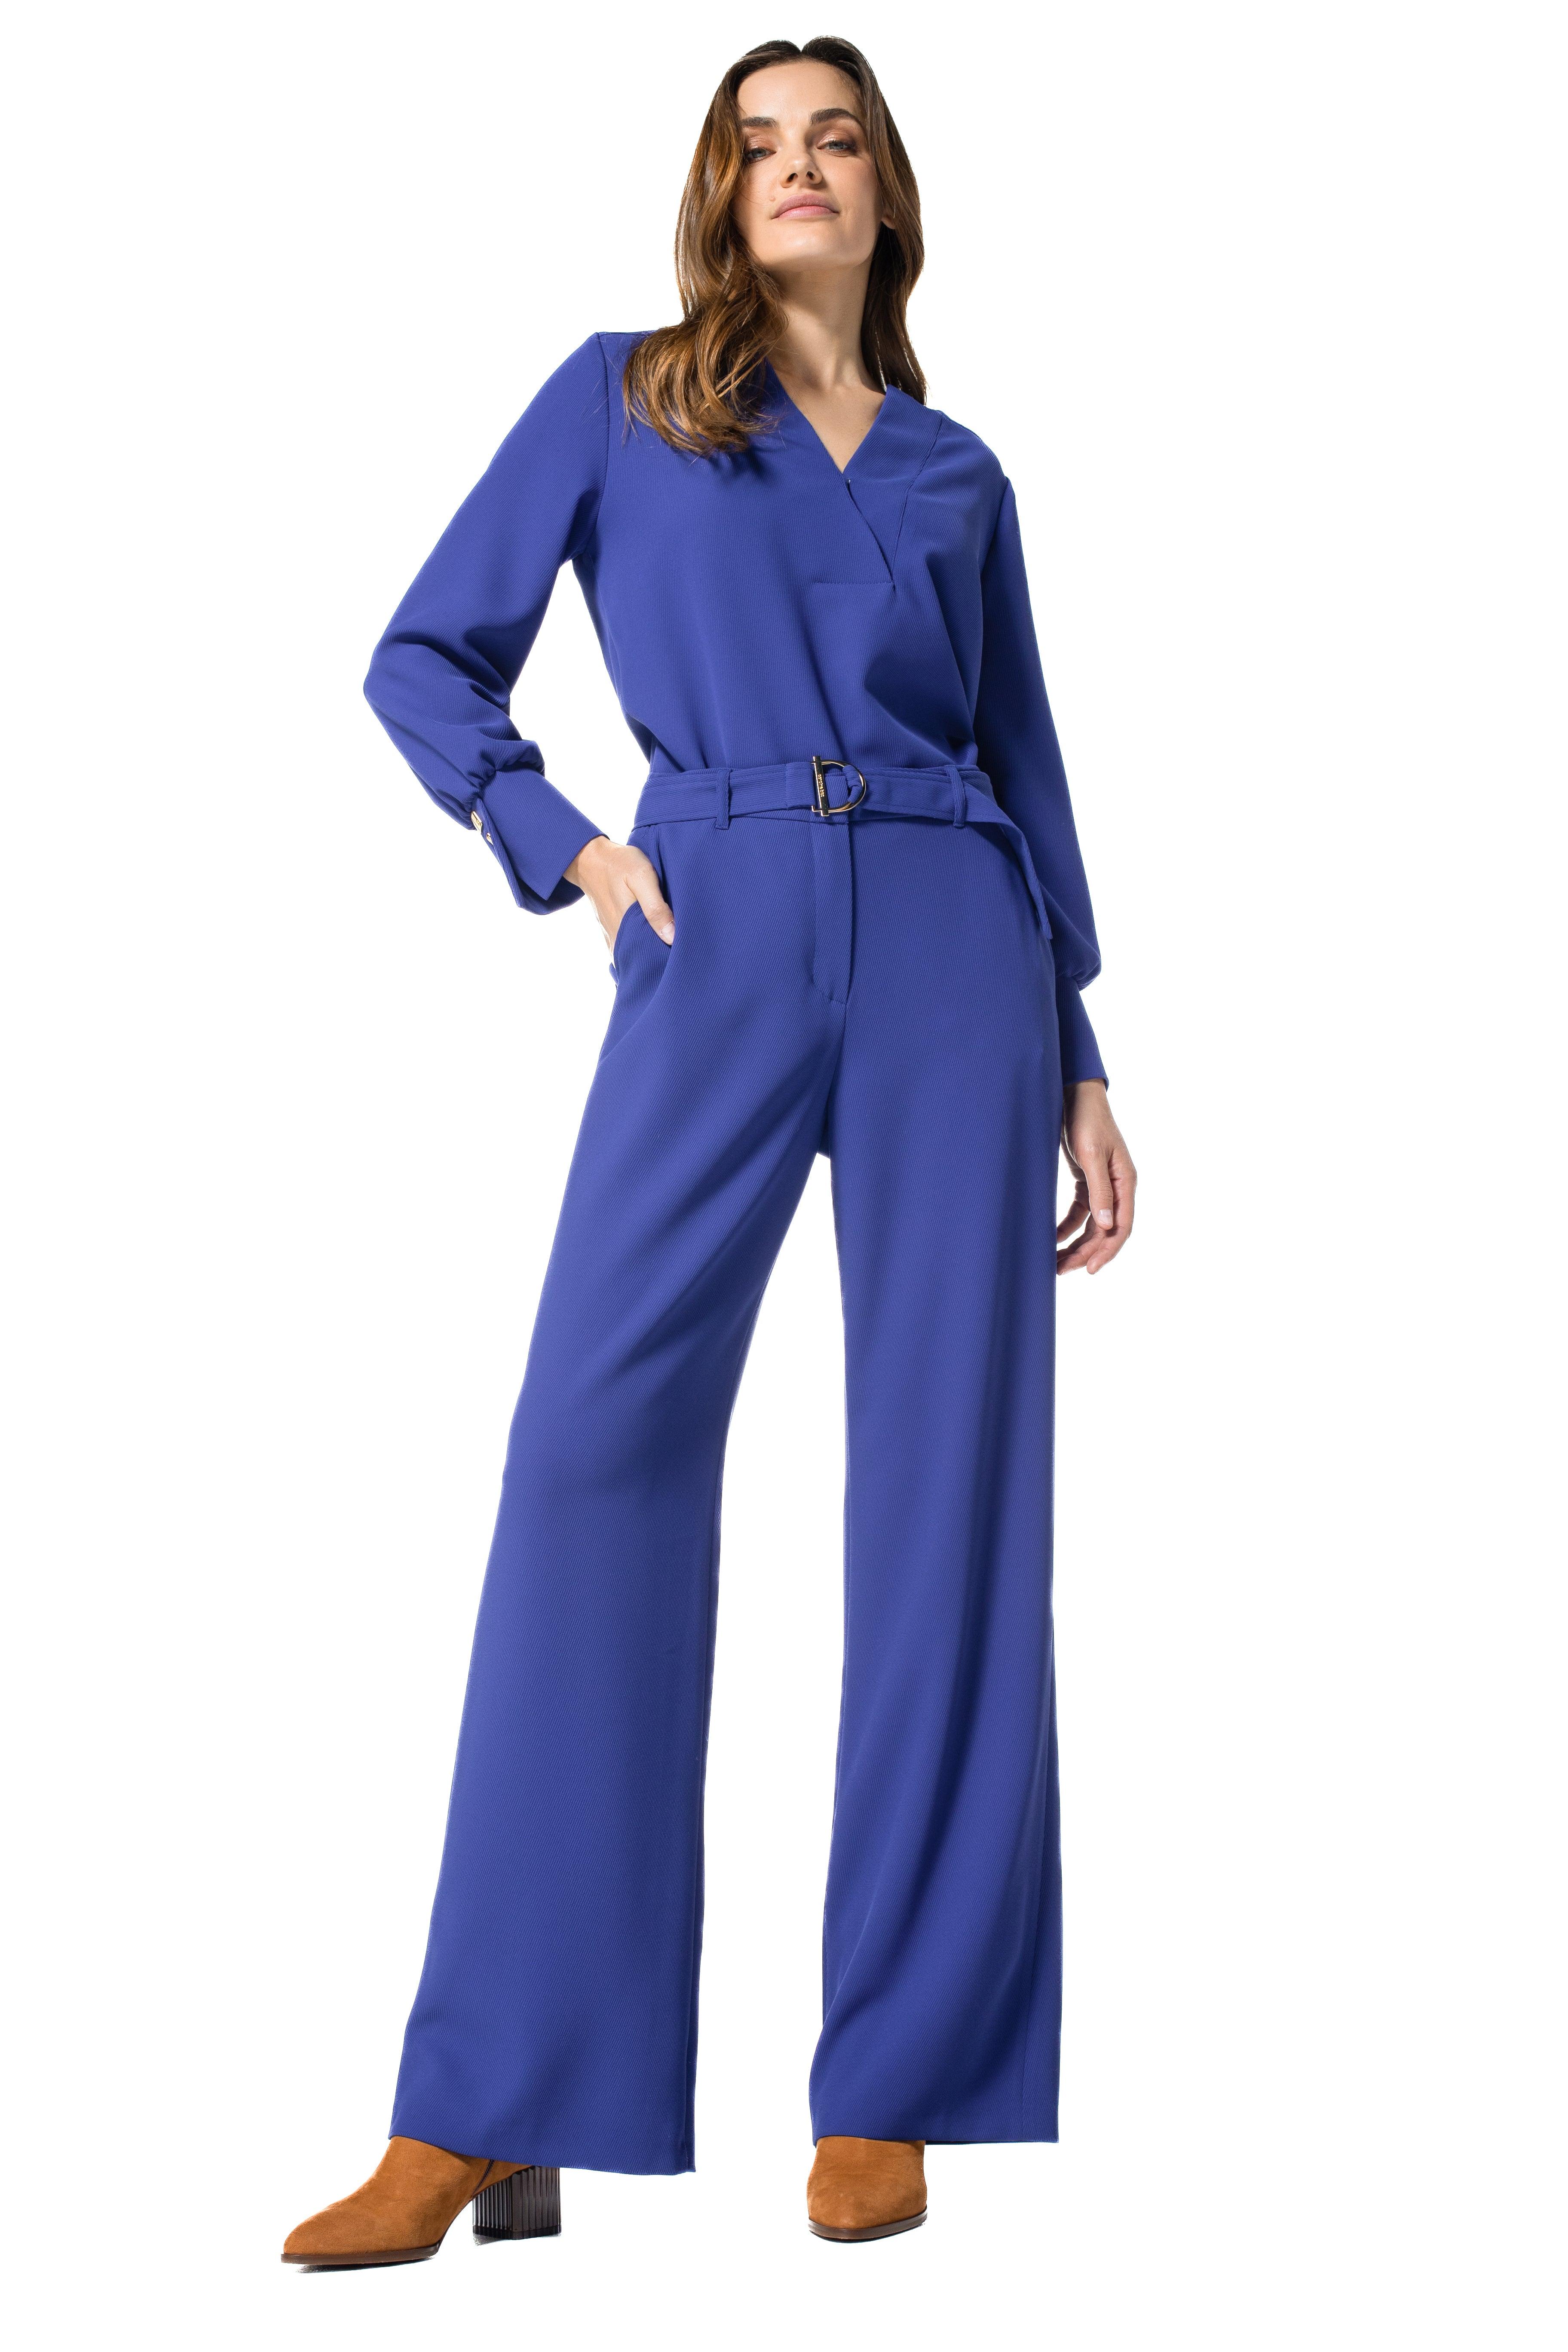 Bloes Blauw Caroline Biss ( 4655/22 ) - Delaere Womenswear